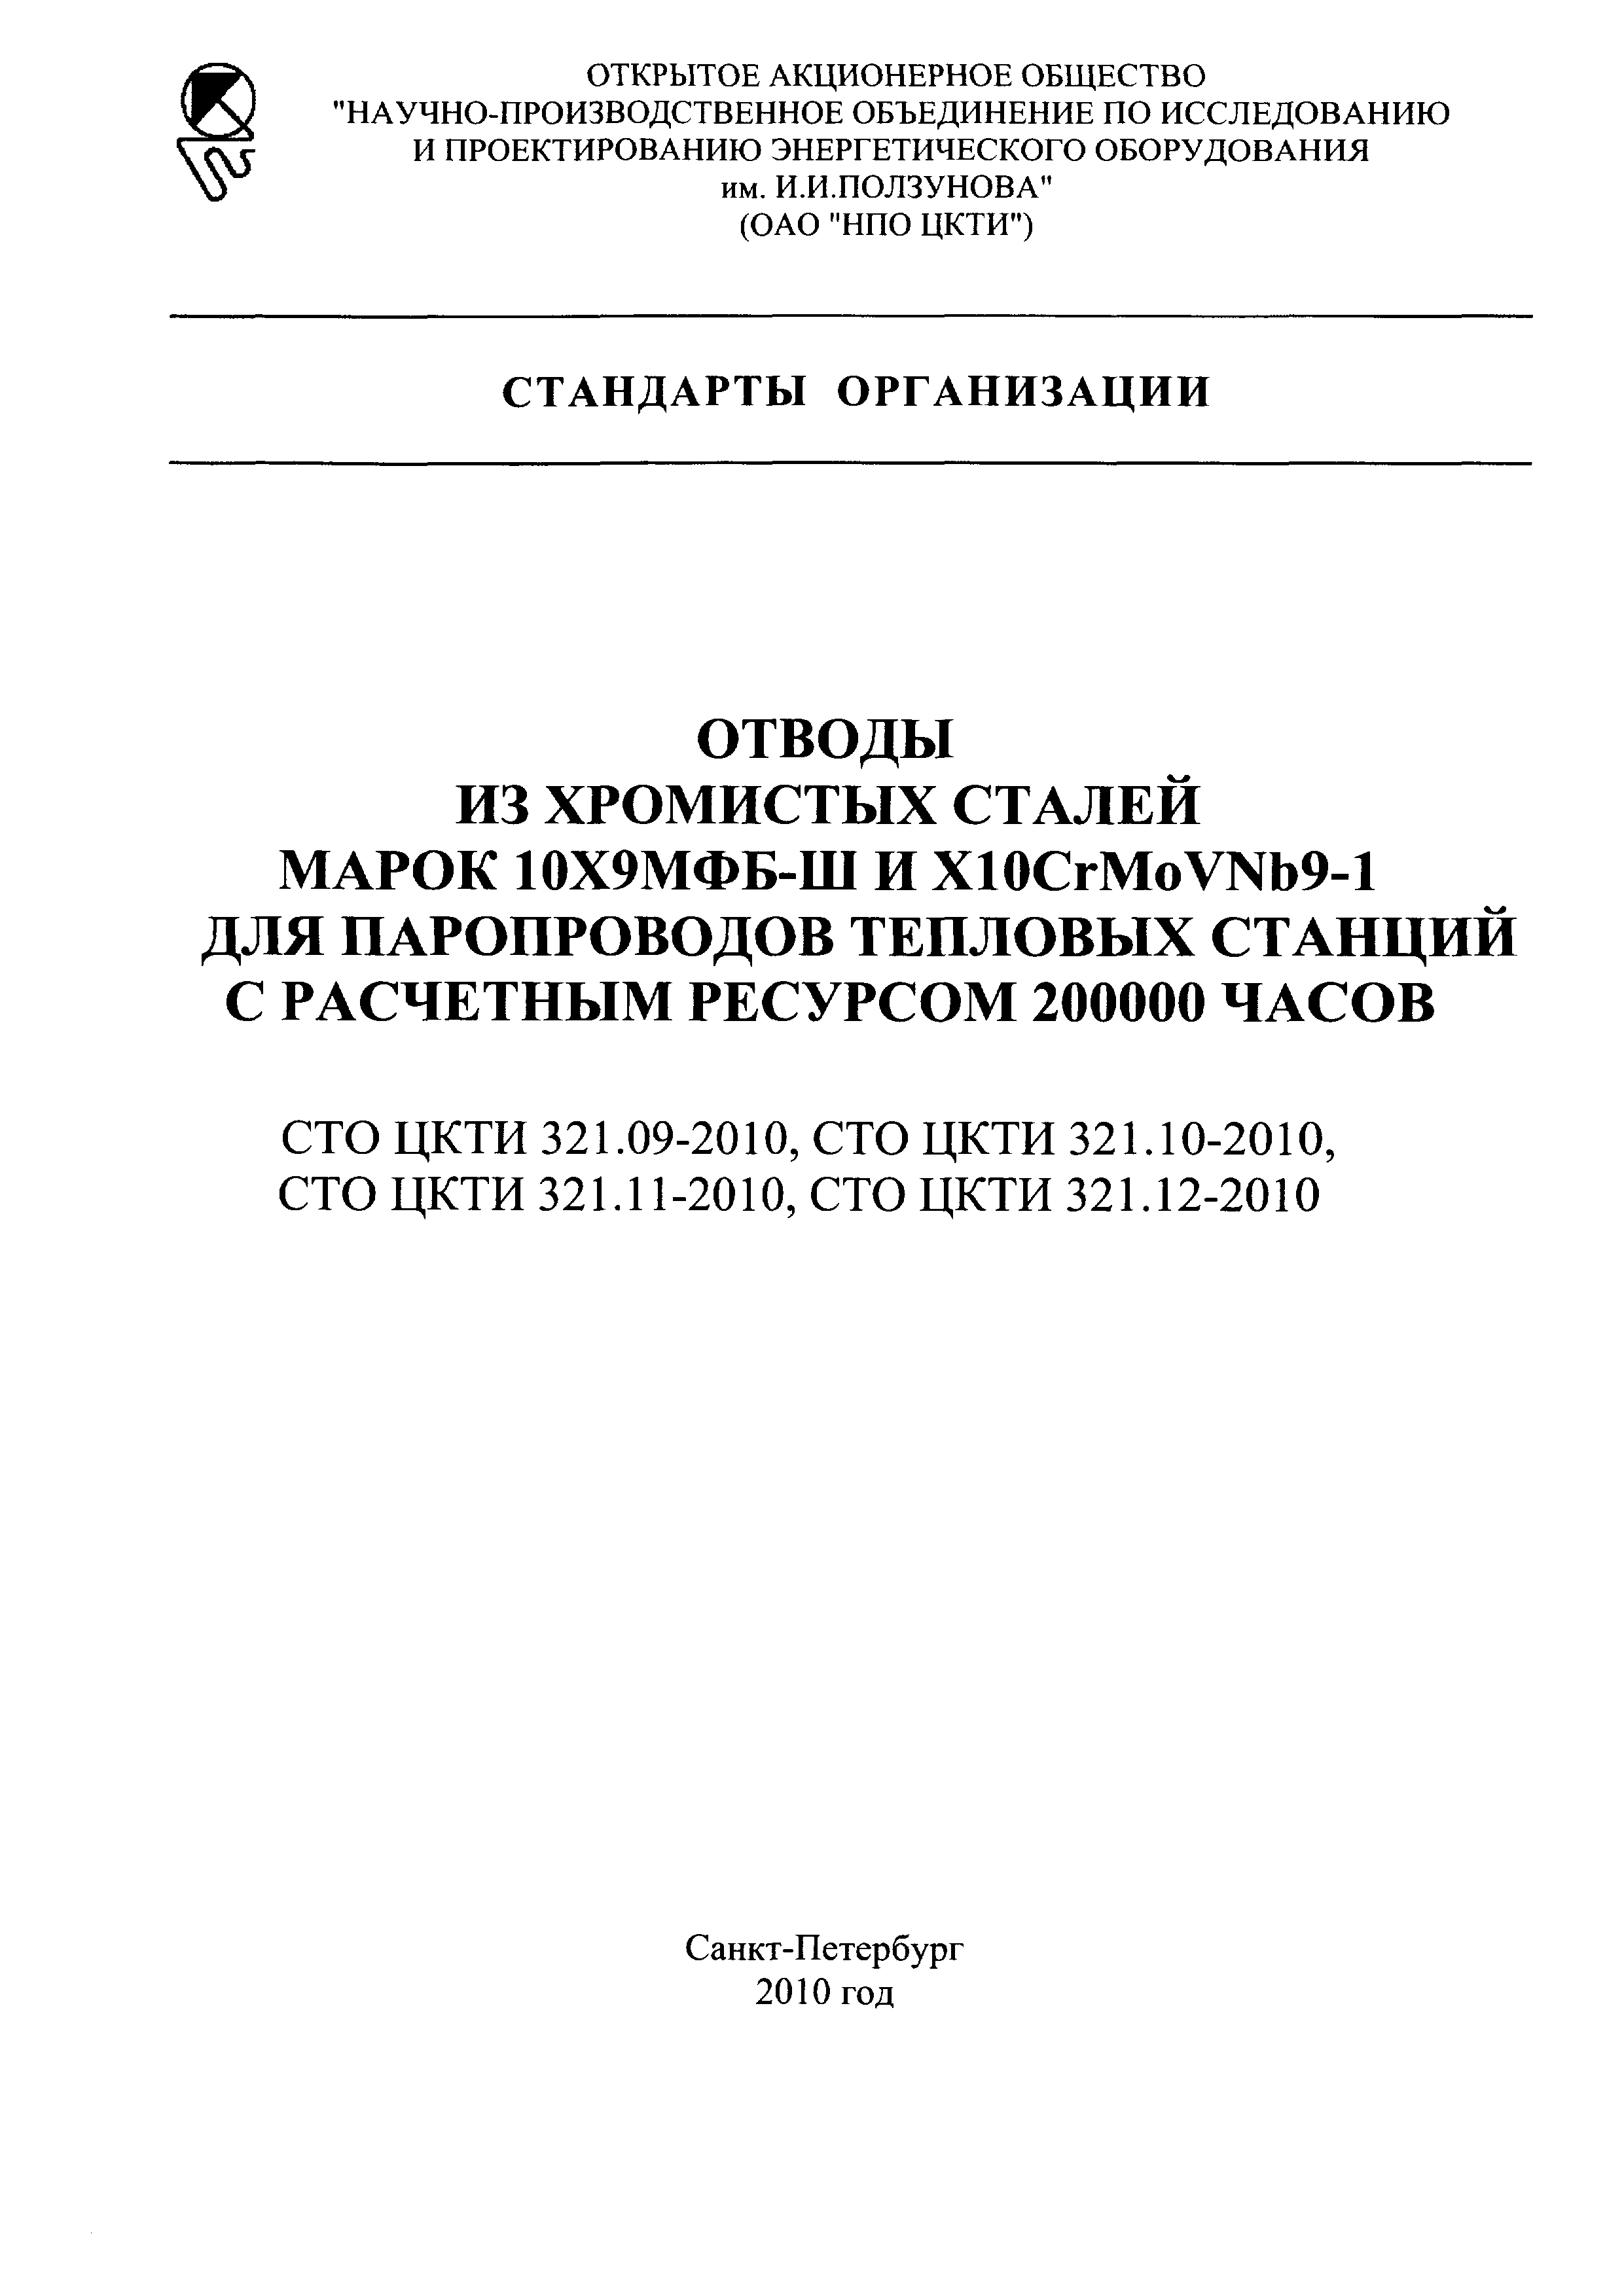 СТО ЦКТИ 321.12-2010